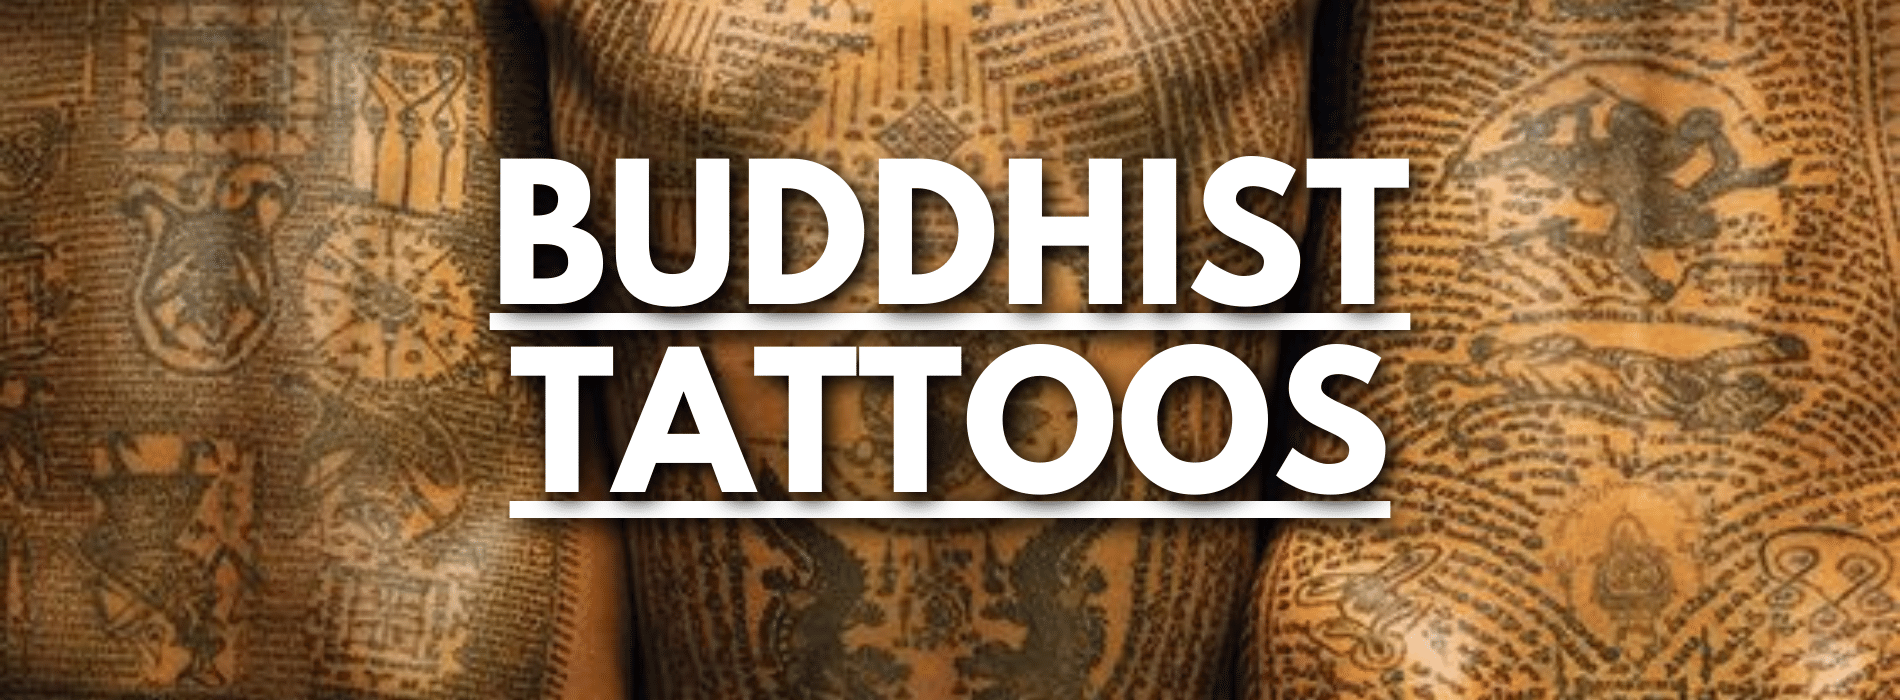 buddhist-tattoos